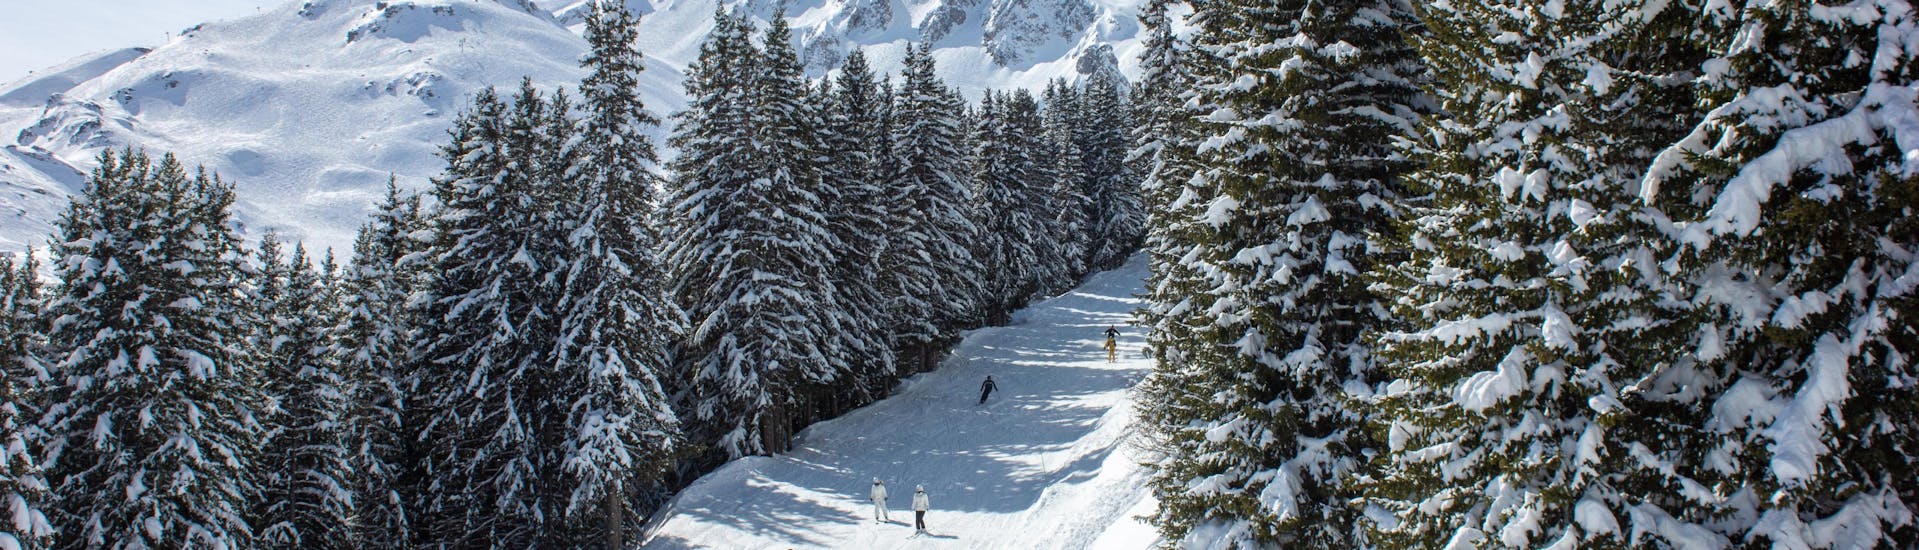 Des personnes profitent du ski lors d'une journée ensoleillée dans la station de ski de Courchevel 1650.